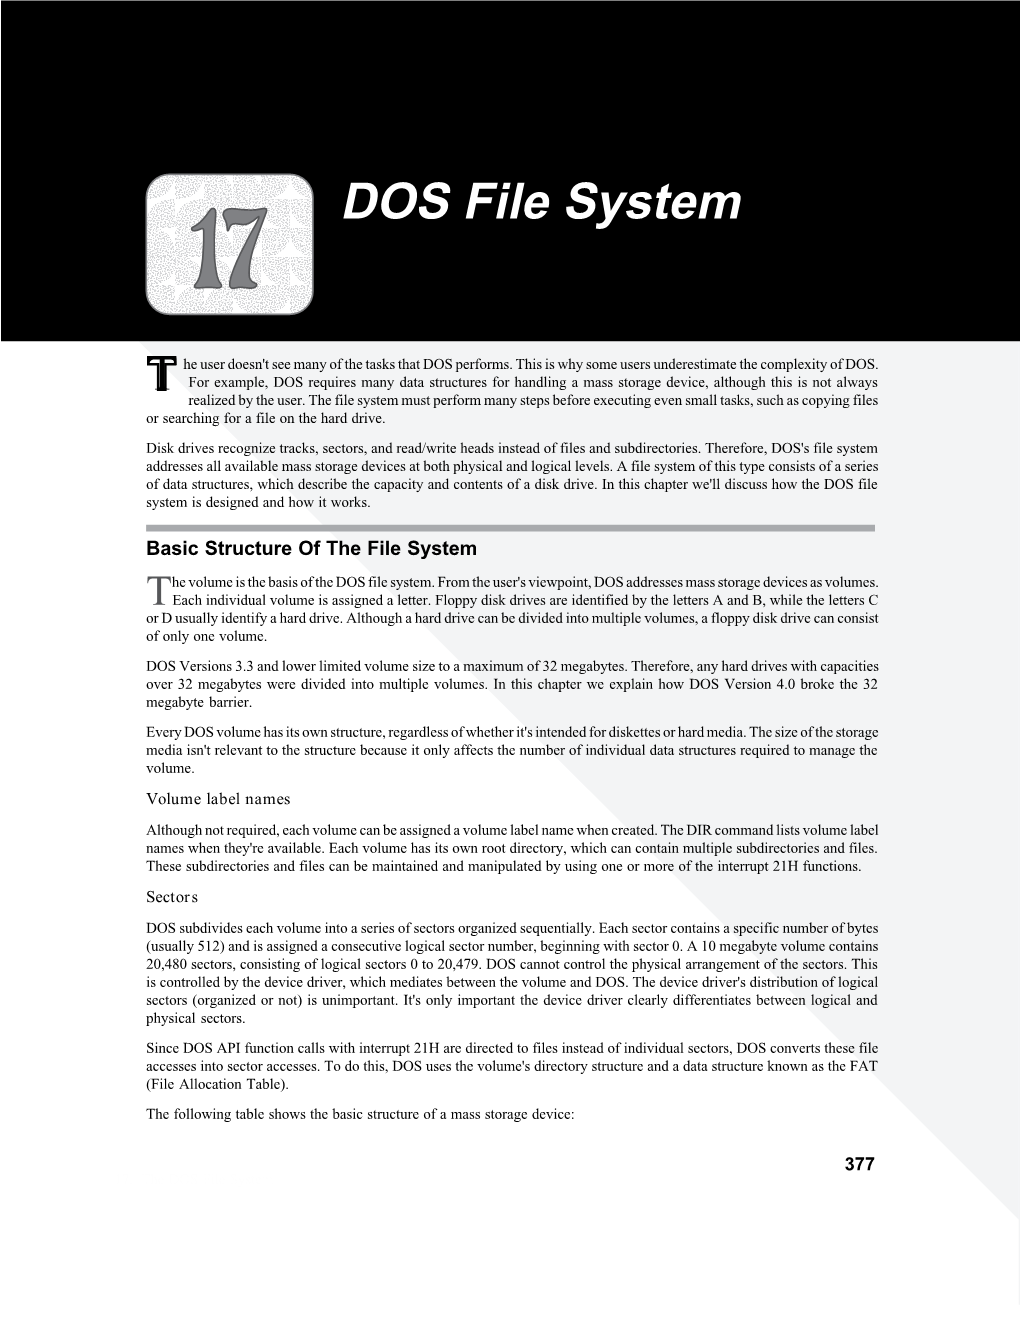 DOS File System a a a a a a Aa a 17A Aaa A